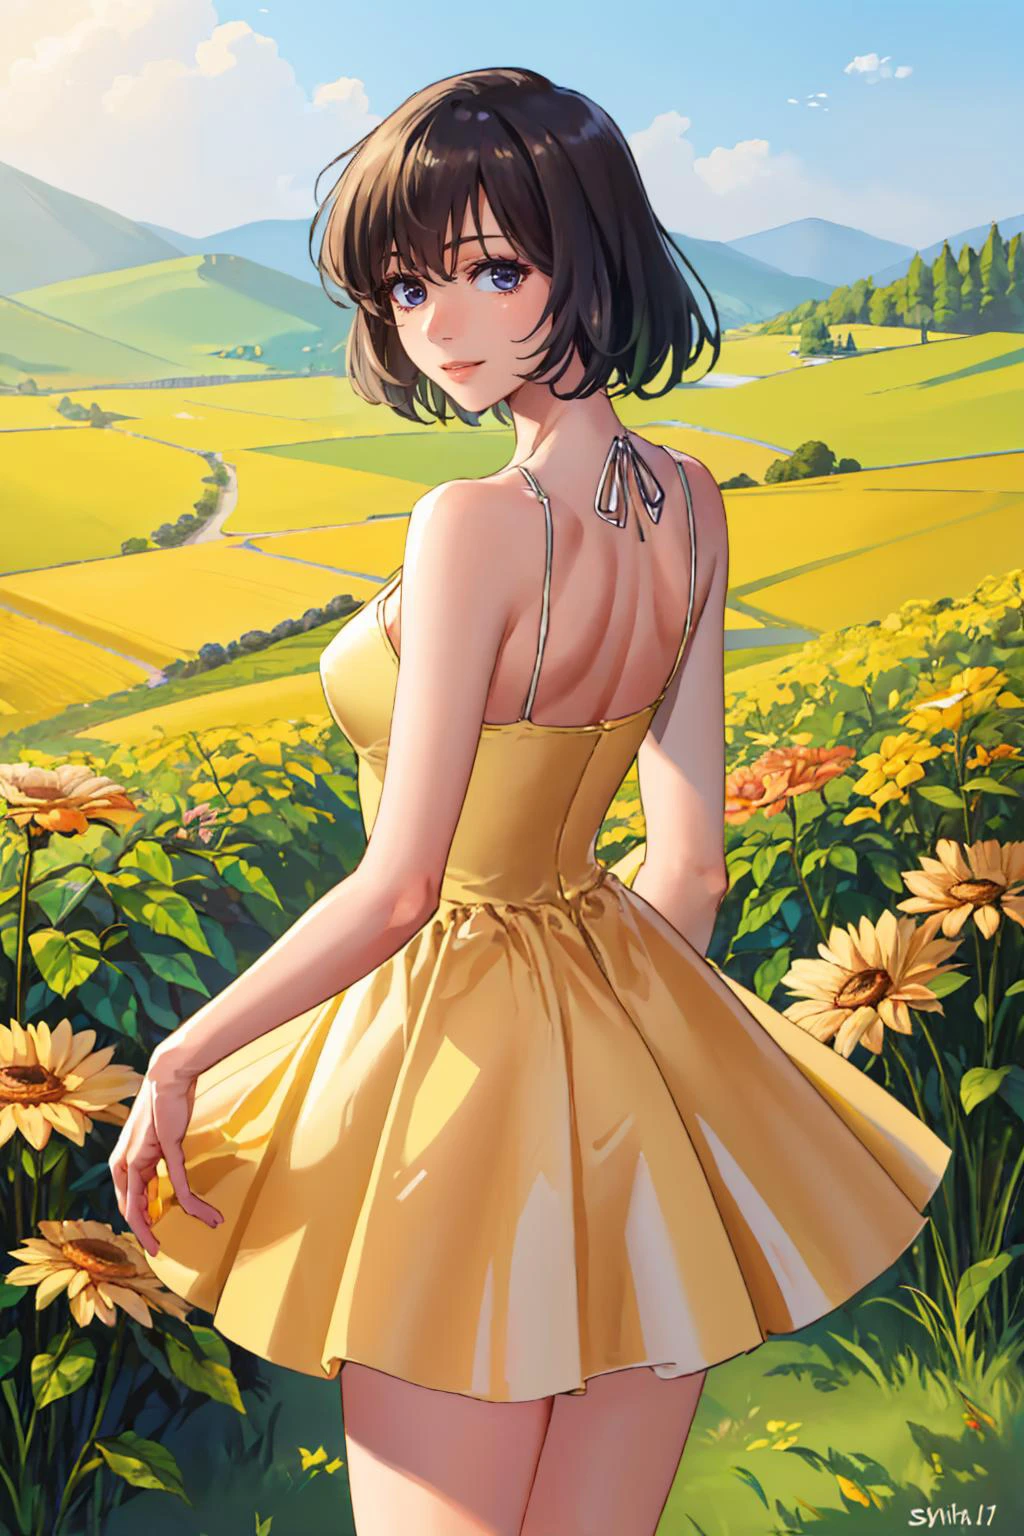 (تحفة, أفضل جودة:1.2), وحيد, 1فتاة, com.chainsumeragi, ابتسامة طفيفة, النظر إلى الخلف, فستان الشمس الأصفر, حقل زهور 